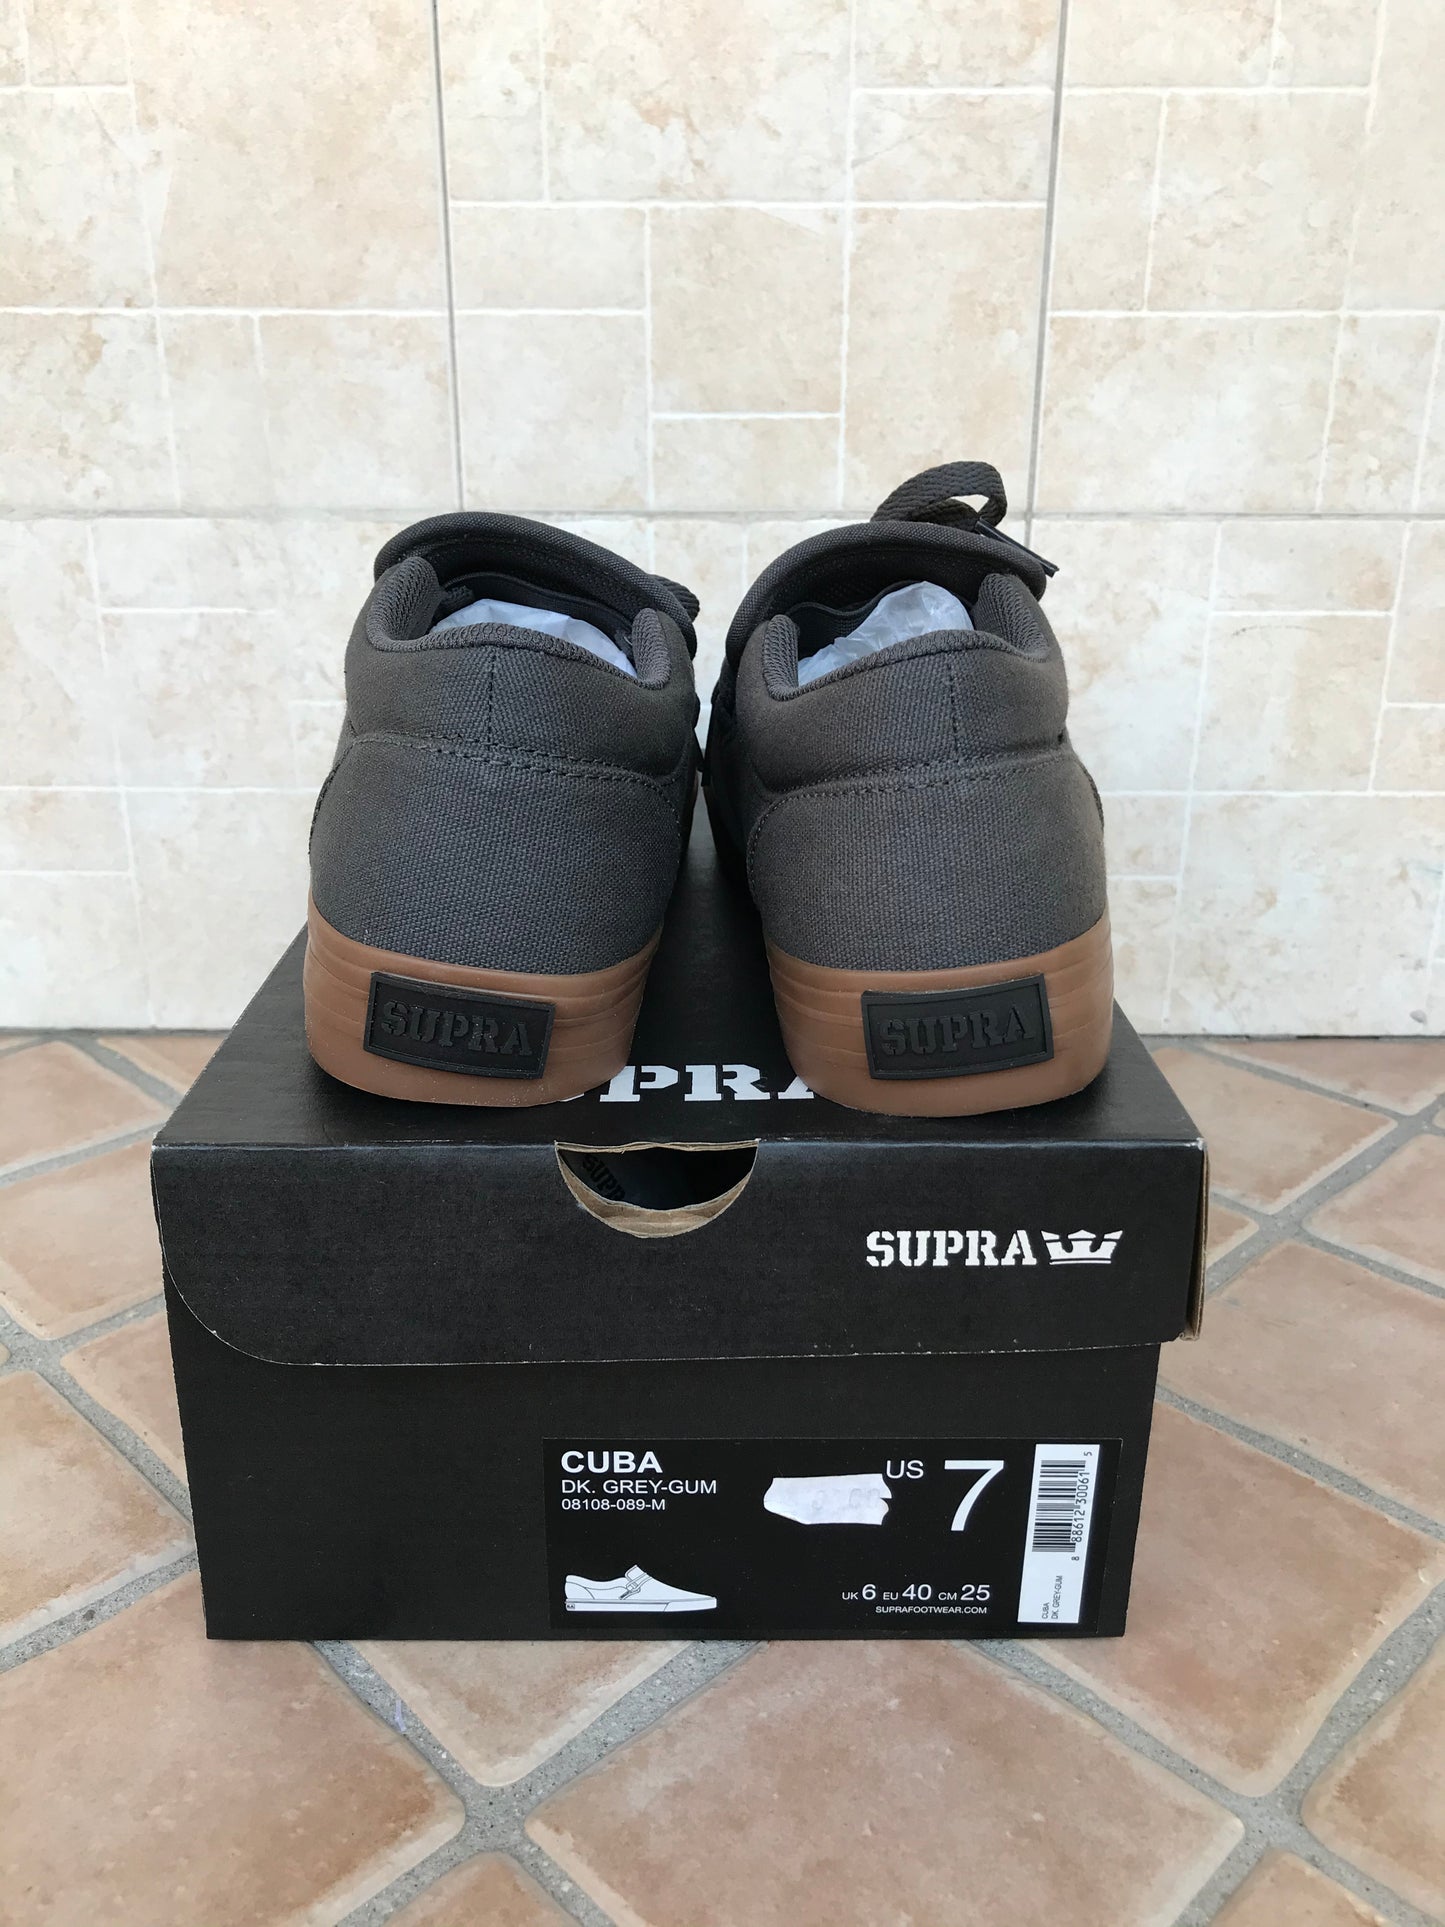 Supra Cuba shoes